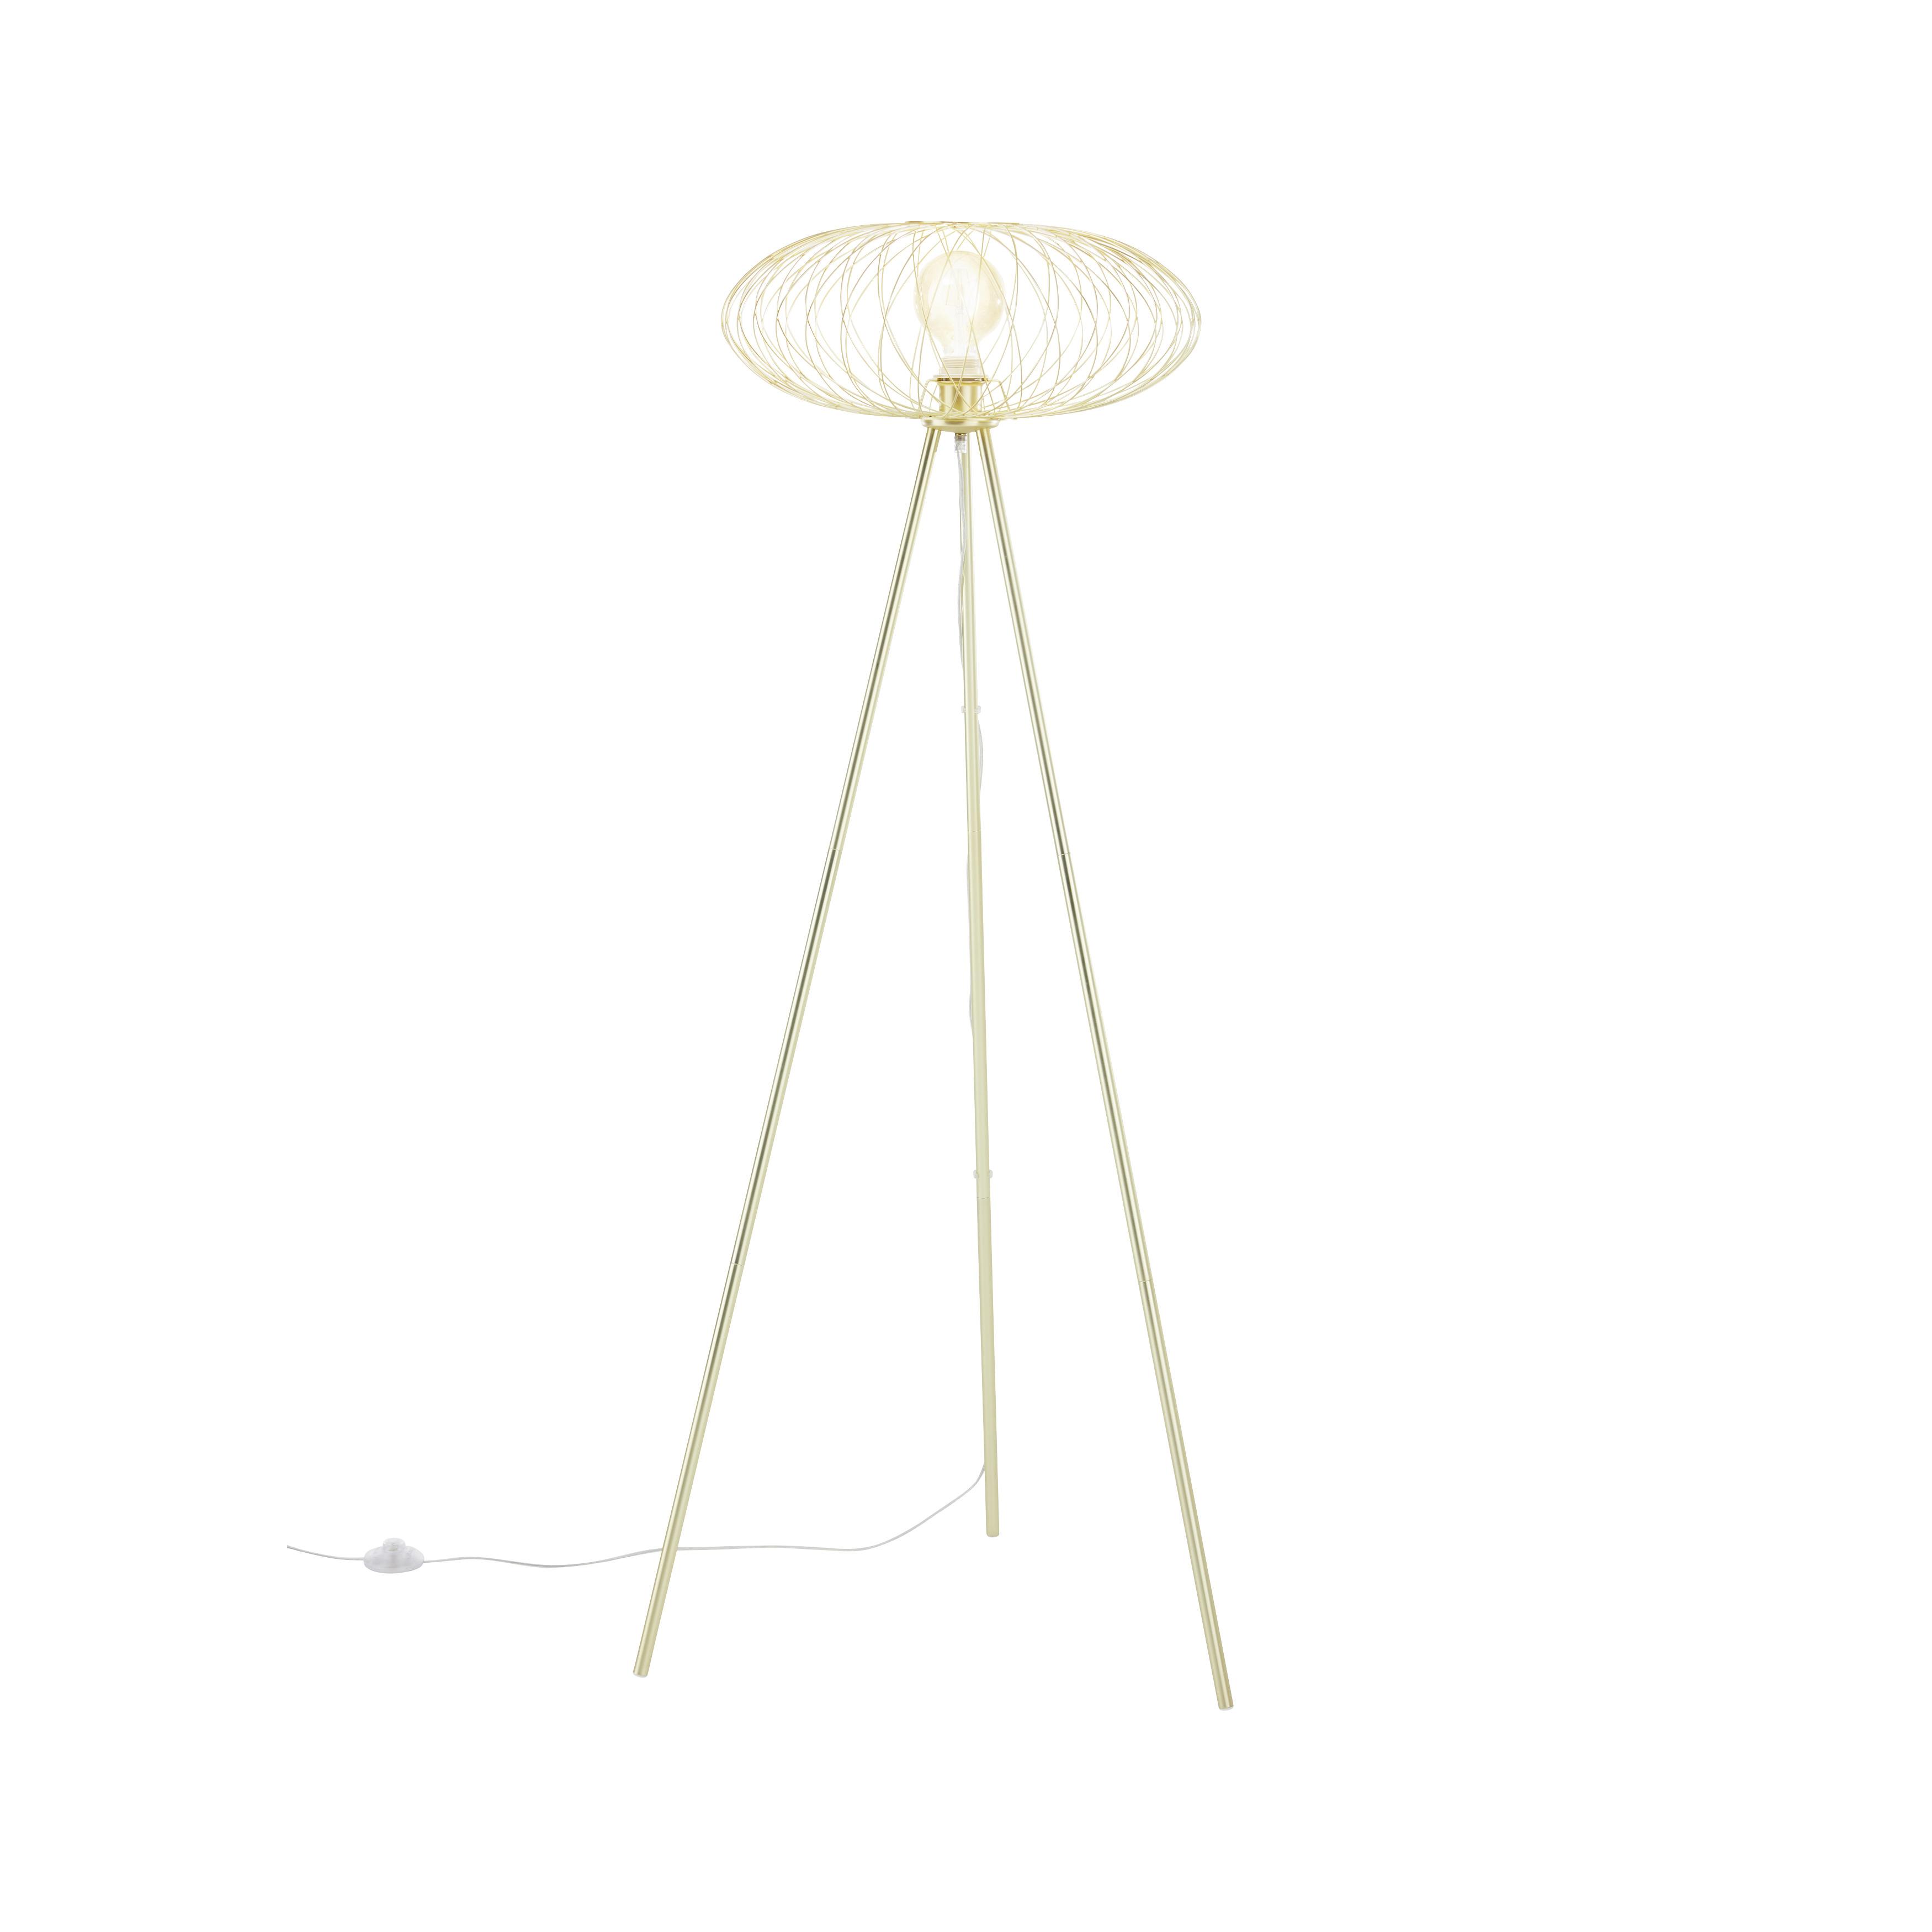 Stojací Lampa Tiziana - barvy zlata, Moderní, kov (50/150cm) - Bessagi Home